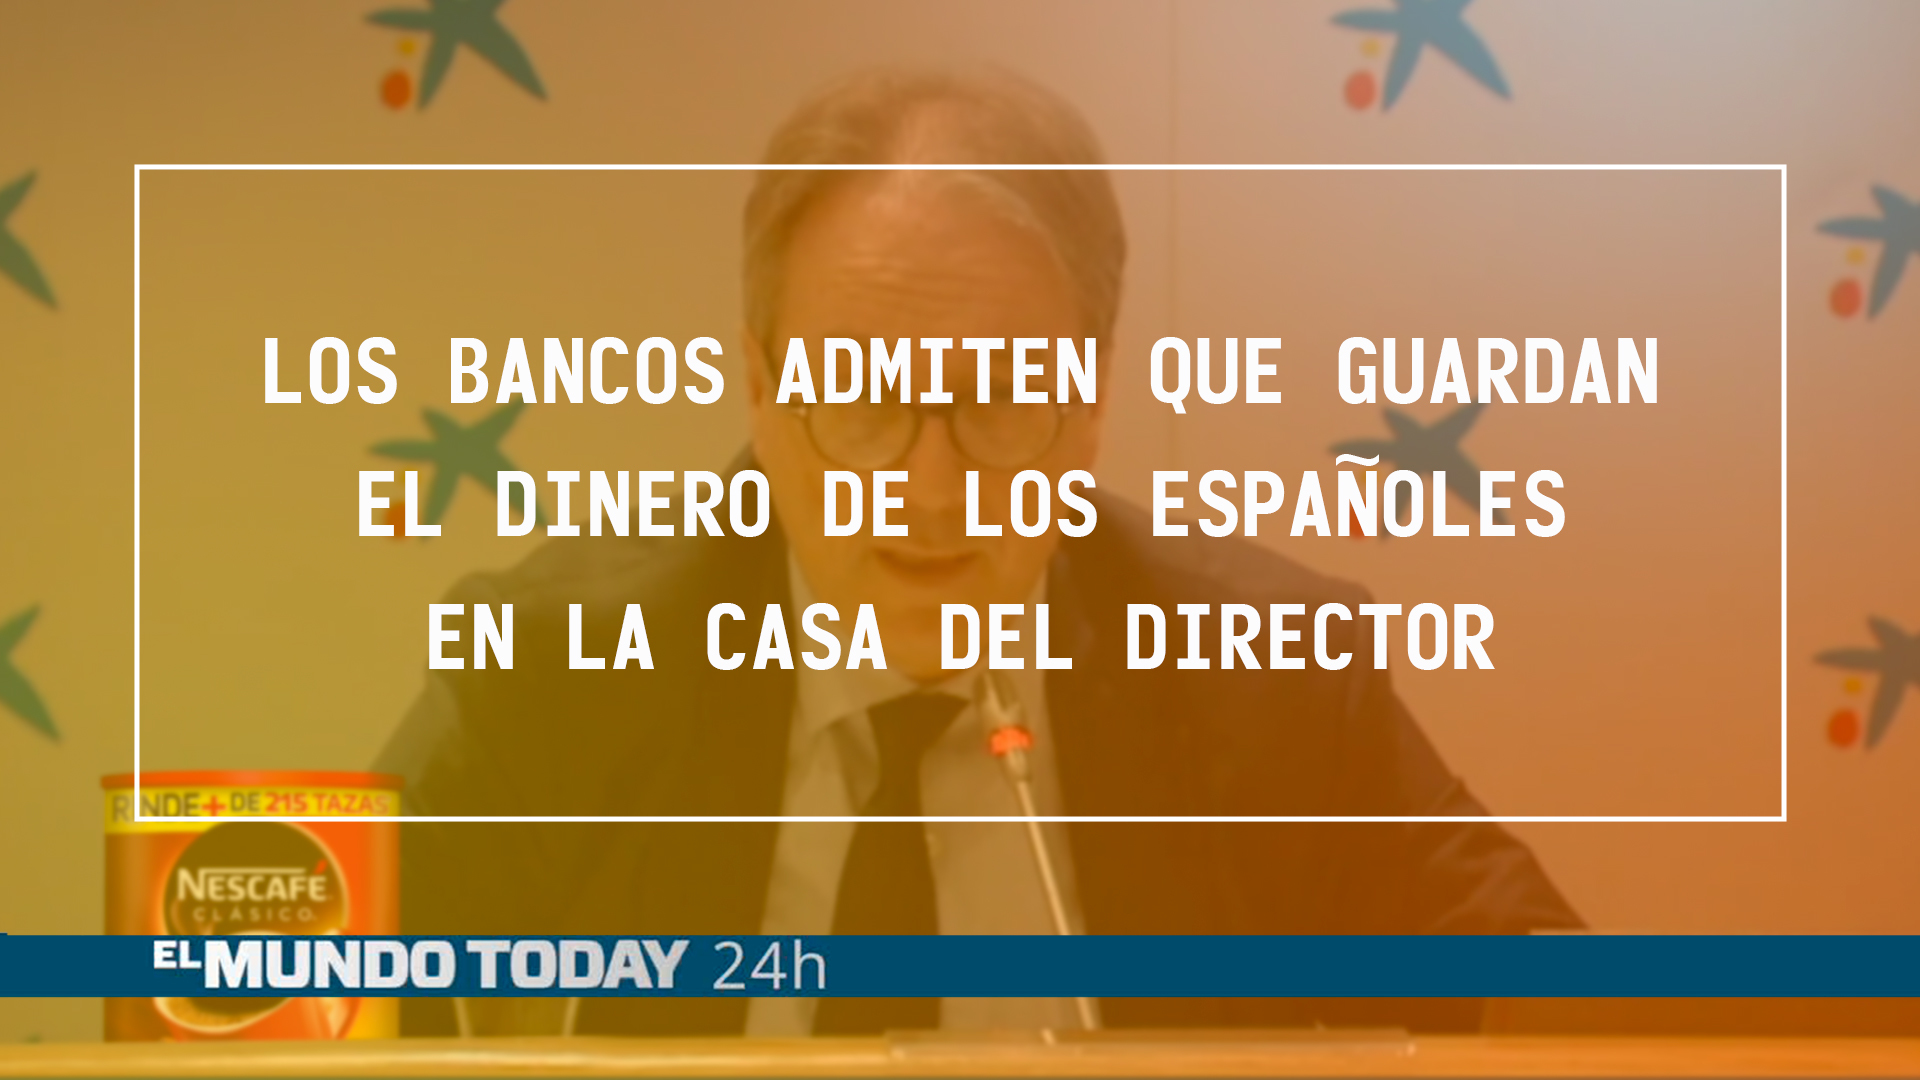 Temporada 1 Los bancos admiten que guardan el dinero de los españoles en casa del director